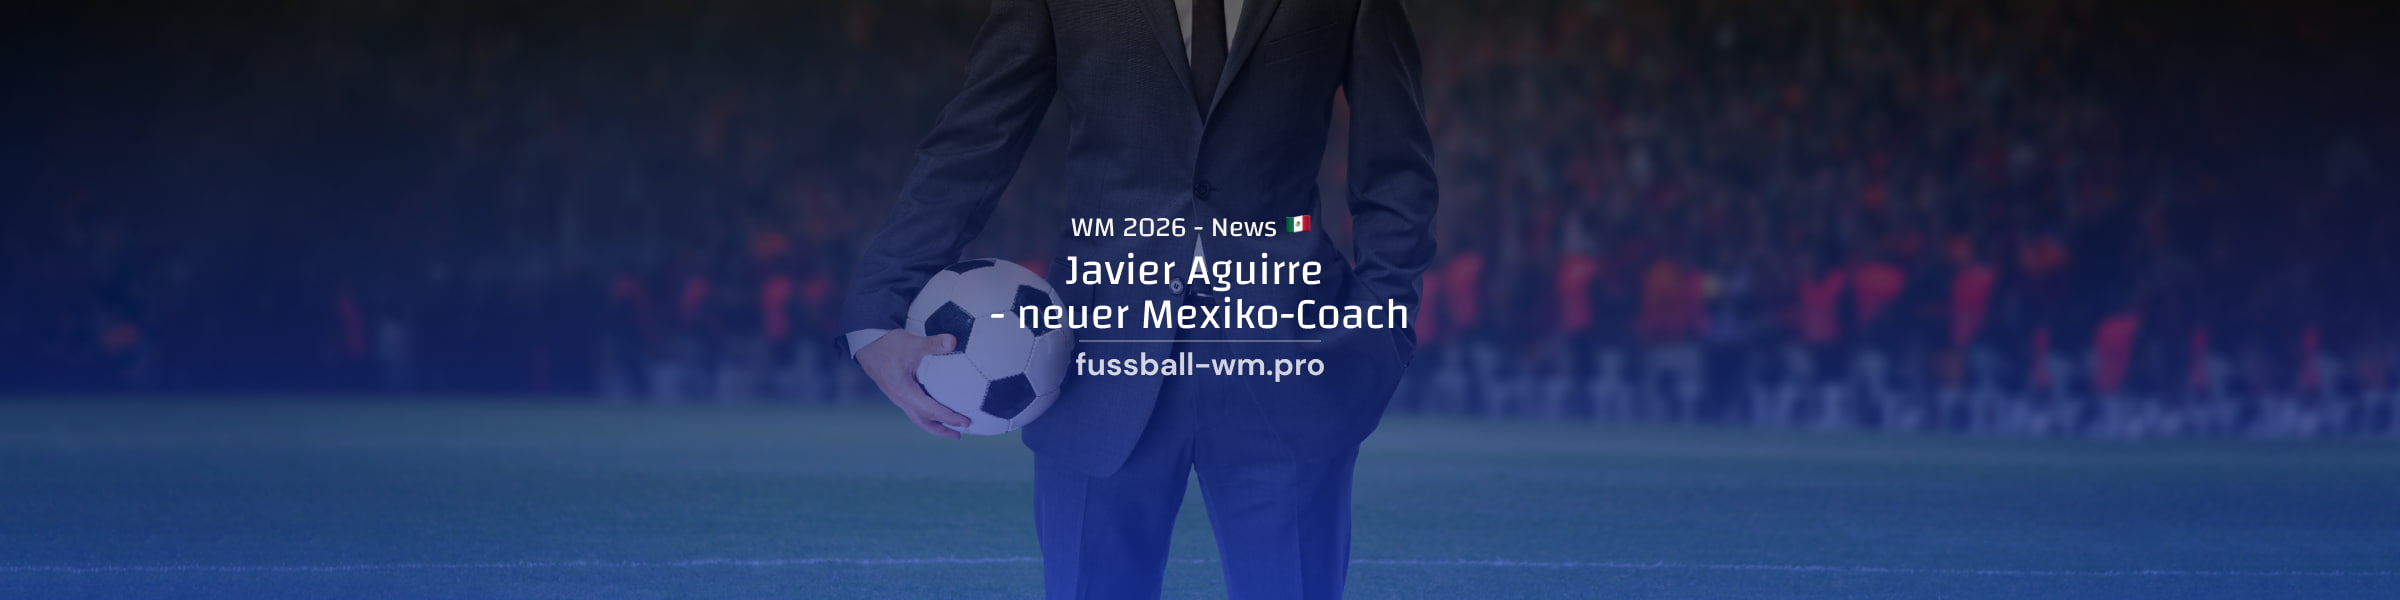 neuer Mexiko-Trainer für WM 2026